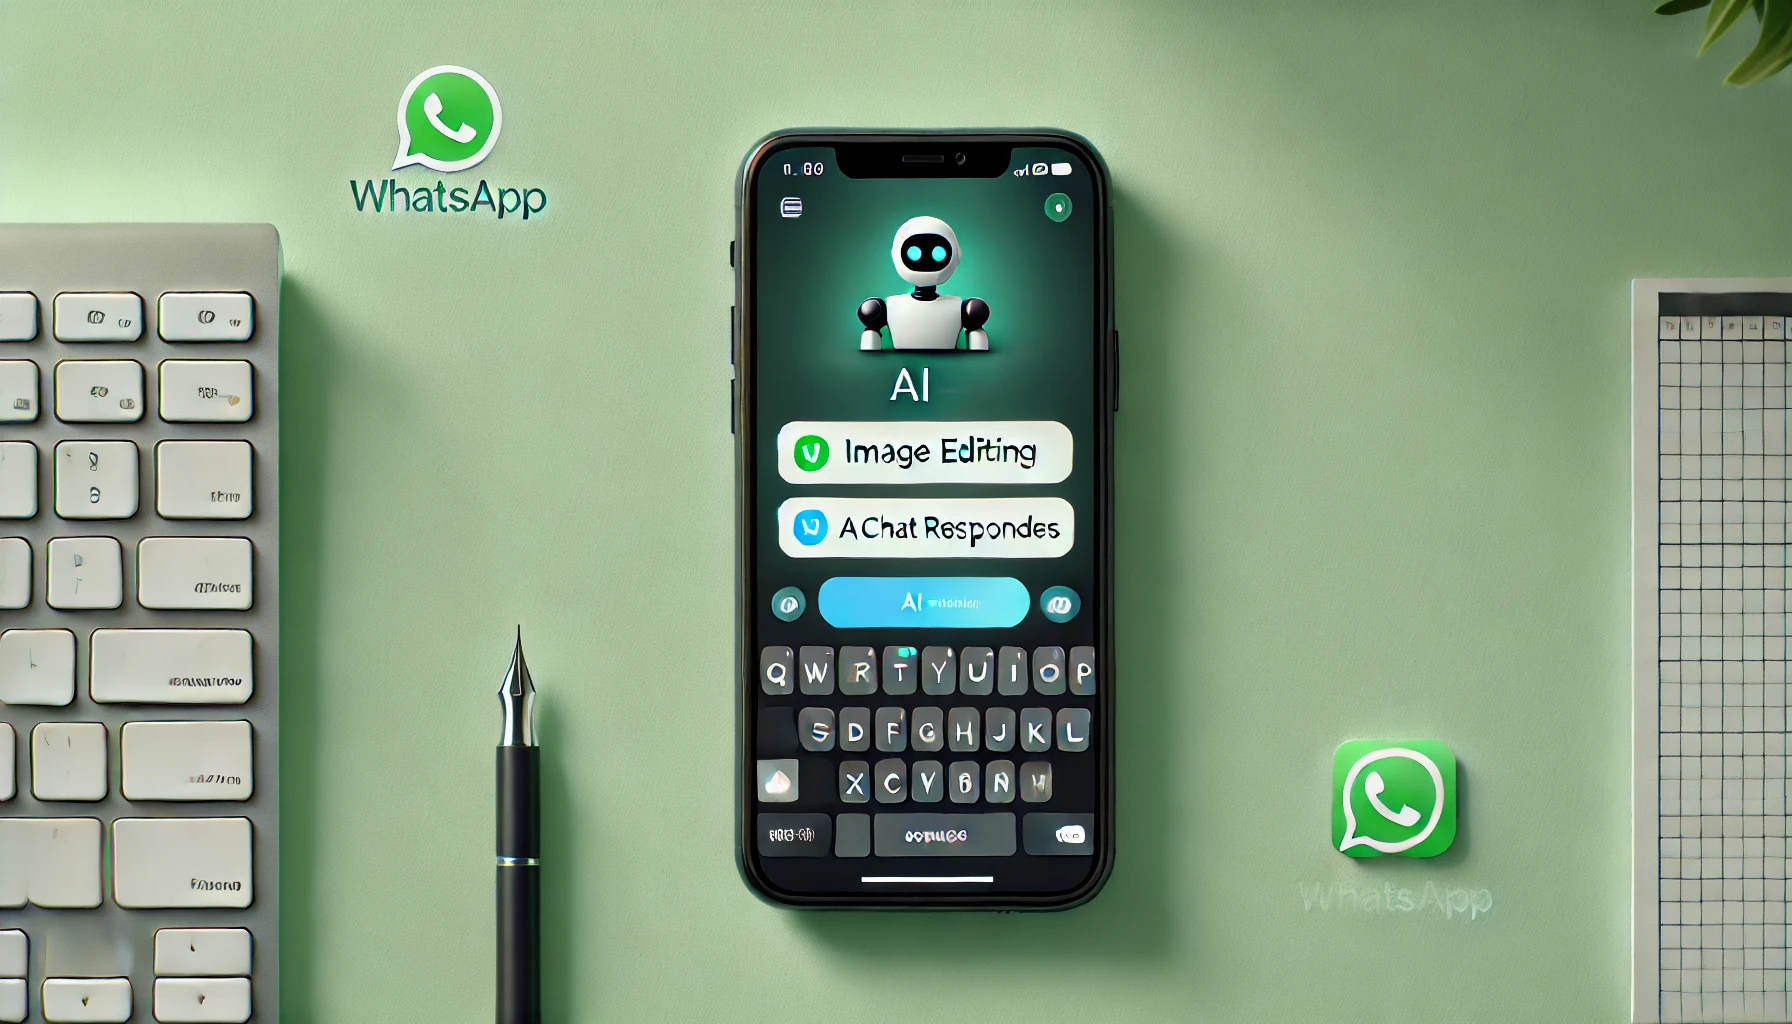 imagen minimalista muestra la nueva función de IA de WhatsApp para editar y responder imágenes. Con un diseño elegante, se ve un smartphone con la interfaz de WhatsApp destacando las características impulsadas por la IA, incluyendo íconos para edición de imágenes y respuestas automáticas. El fondo es limpio y simple, utilizando tonos de verde y blanco, evocando la identidad visual de WhatsApp.